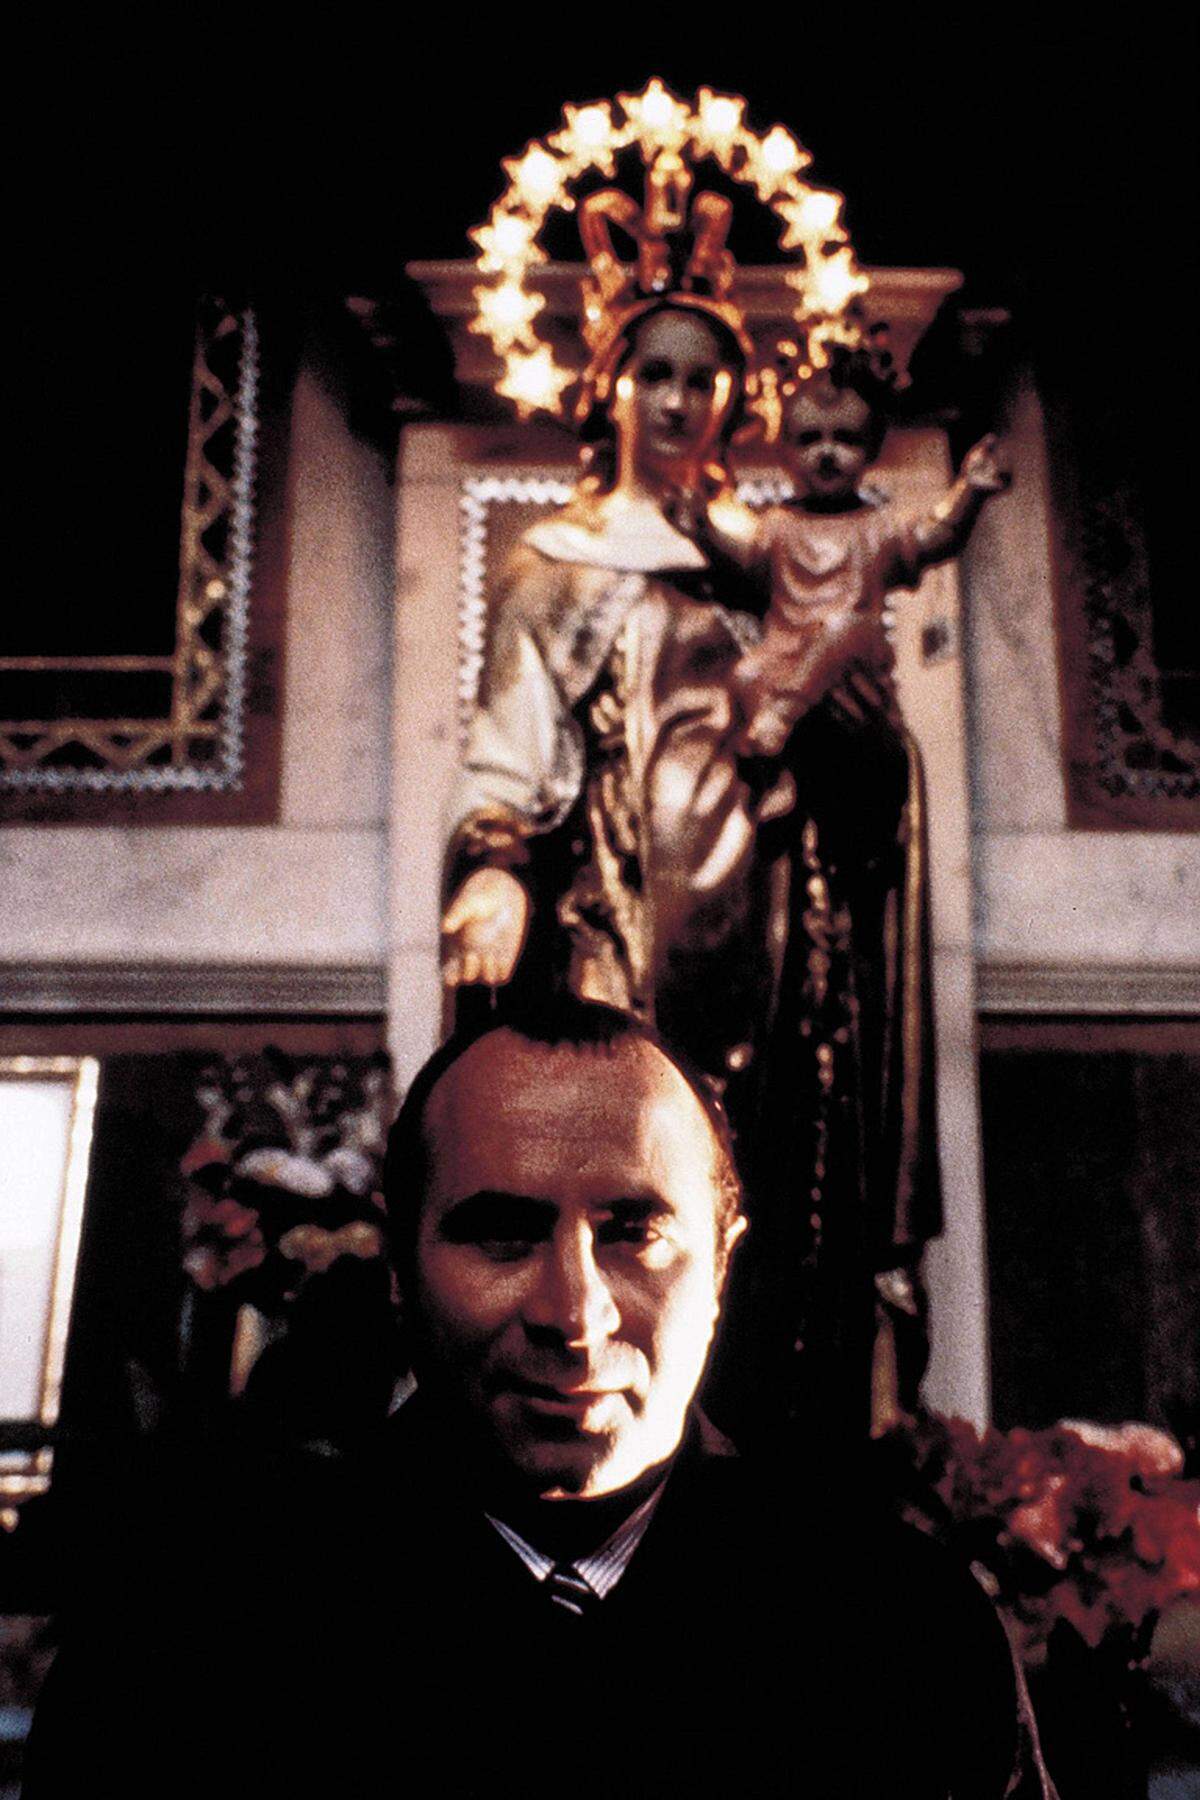 Lob der Kritiker und den Schauspielerpreis in Cannes bekam er für "Mona Lisa" (1986). Frisch aus dem Gefängnis entlassen bekommt er darin einen Job als Chauffeur eines Callgirls (Cathy Tyson). Hoskins wurde für seine Darstellung auch für den Oscar nominiert.